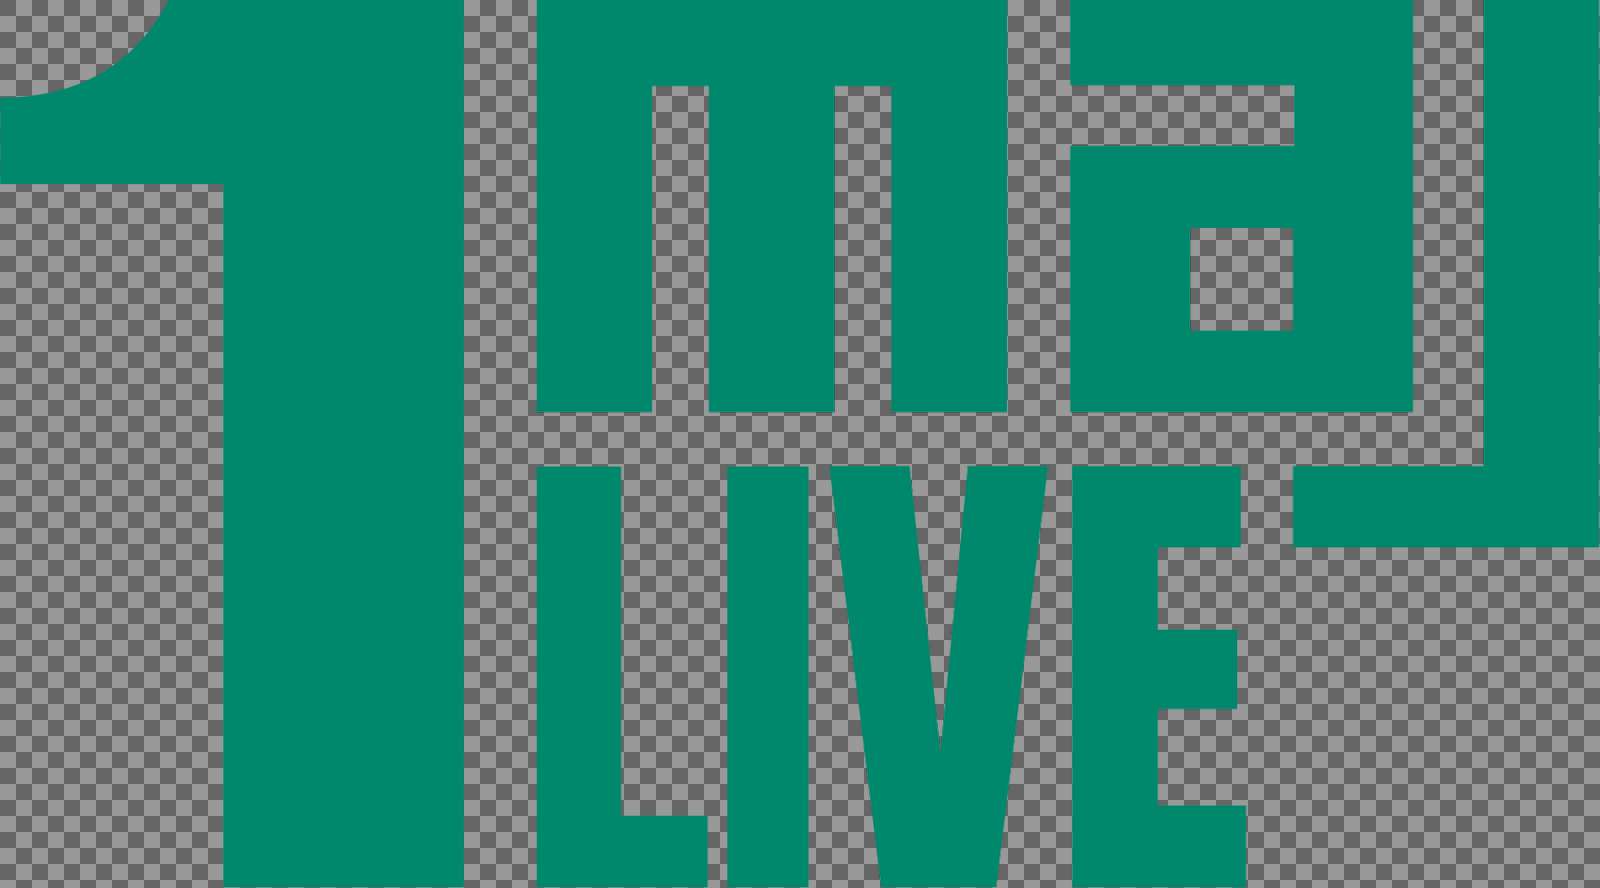 1 maj live logo grøn